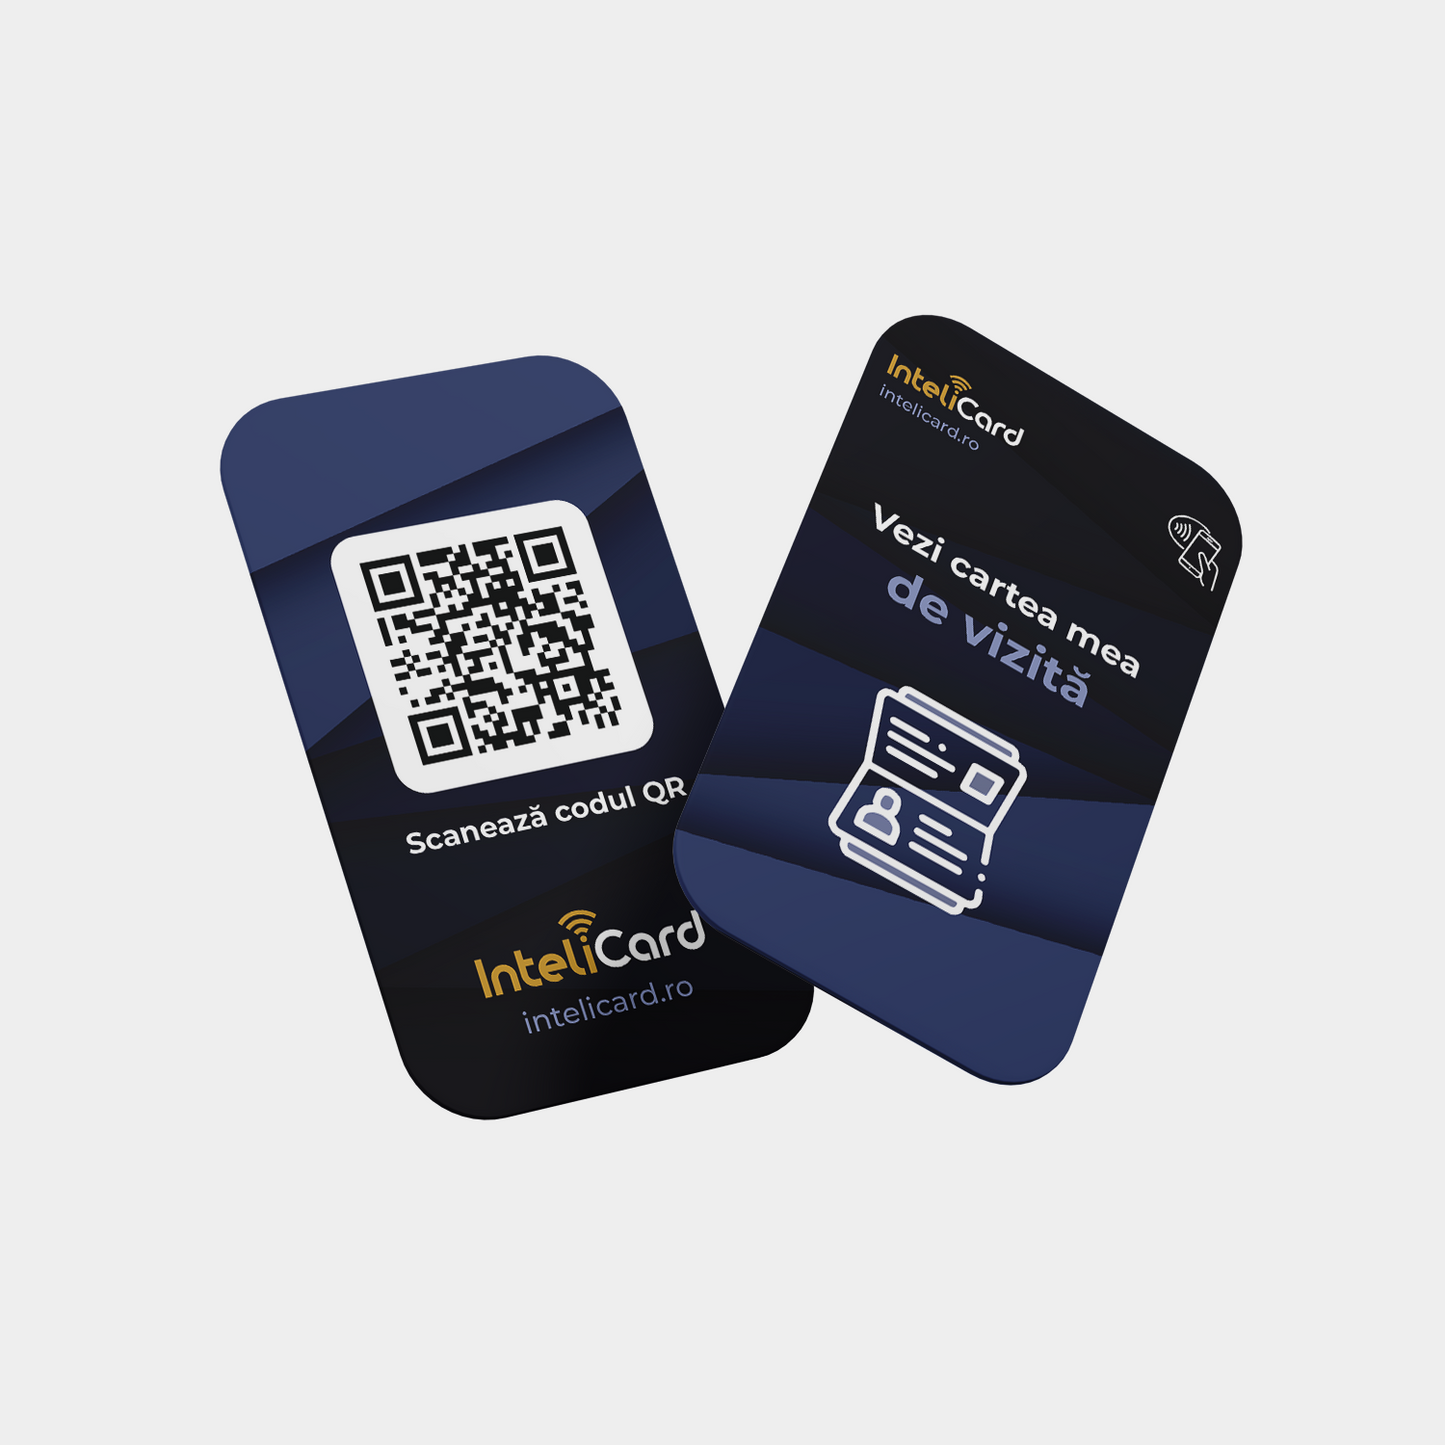 InteliCard - Card Carte de vizită digitală